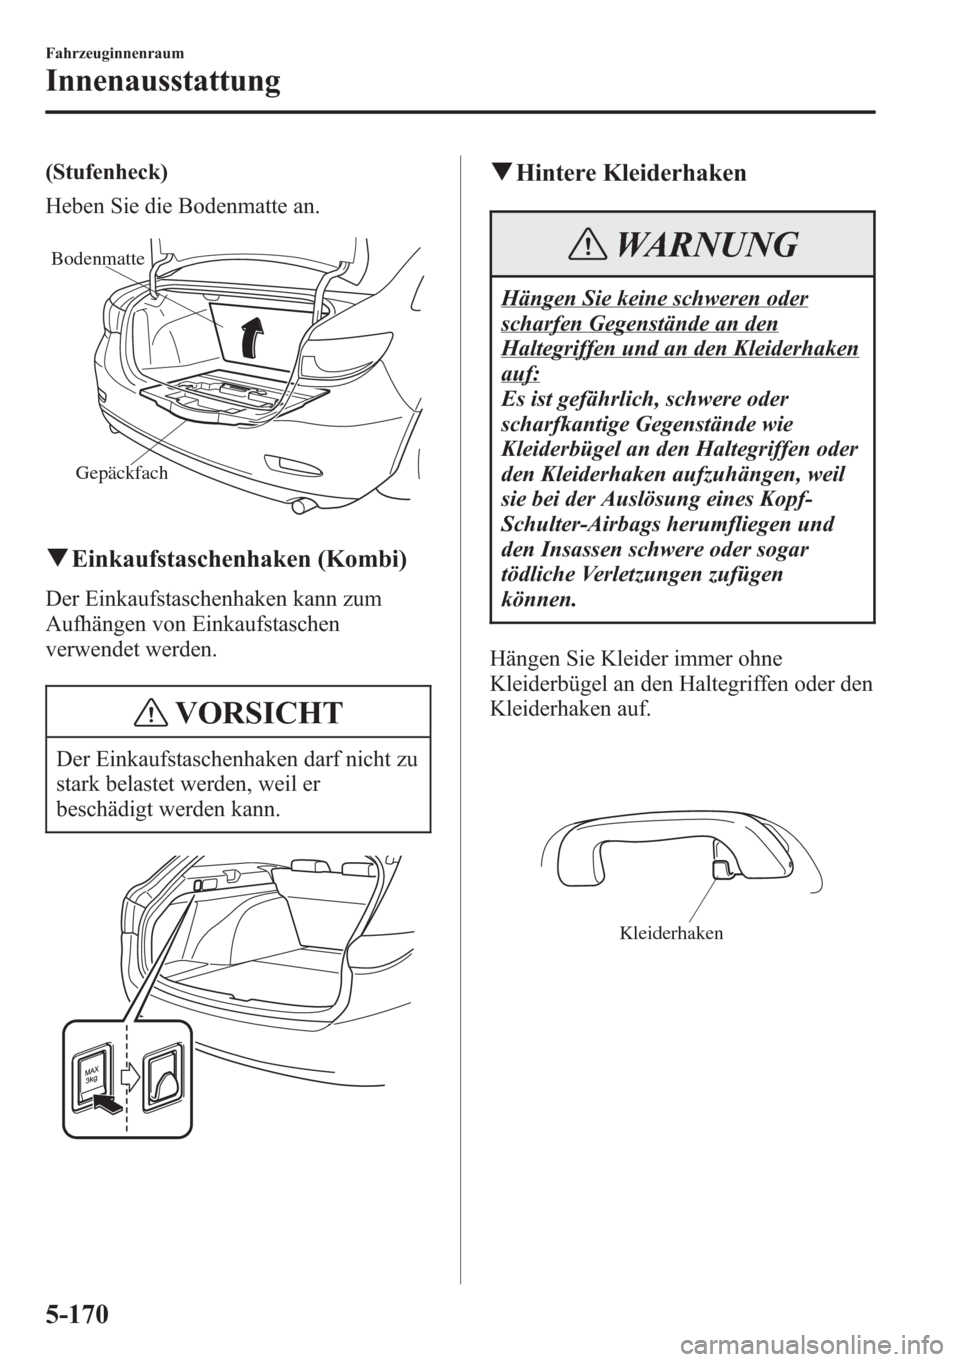 MAZDA MODEL 6 2015  Betriebsanleitung (in German) (Stufenheck)
Heben Sie die Bodenmatte an.
Gepäckfach Bodenmatte
qEinkaufstaschenhaken (Kombi)
Der Einkaufstaschenhaken kann zum
Aufhängen von Einkaufstaschen
verwendet werden.
VORSICHT
Der Einkaufst